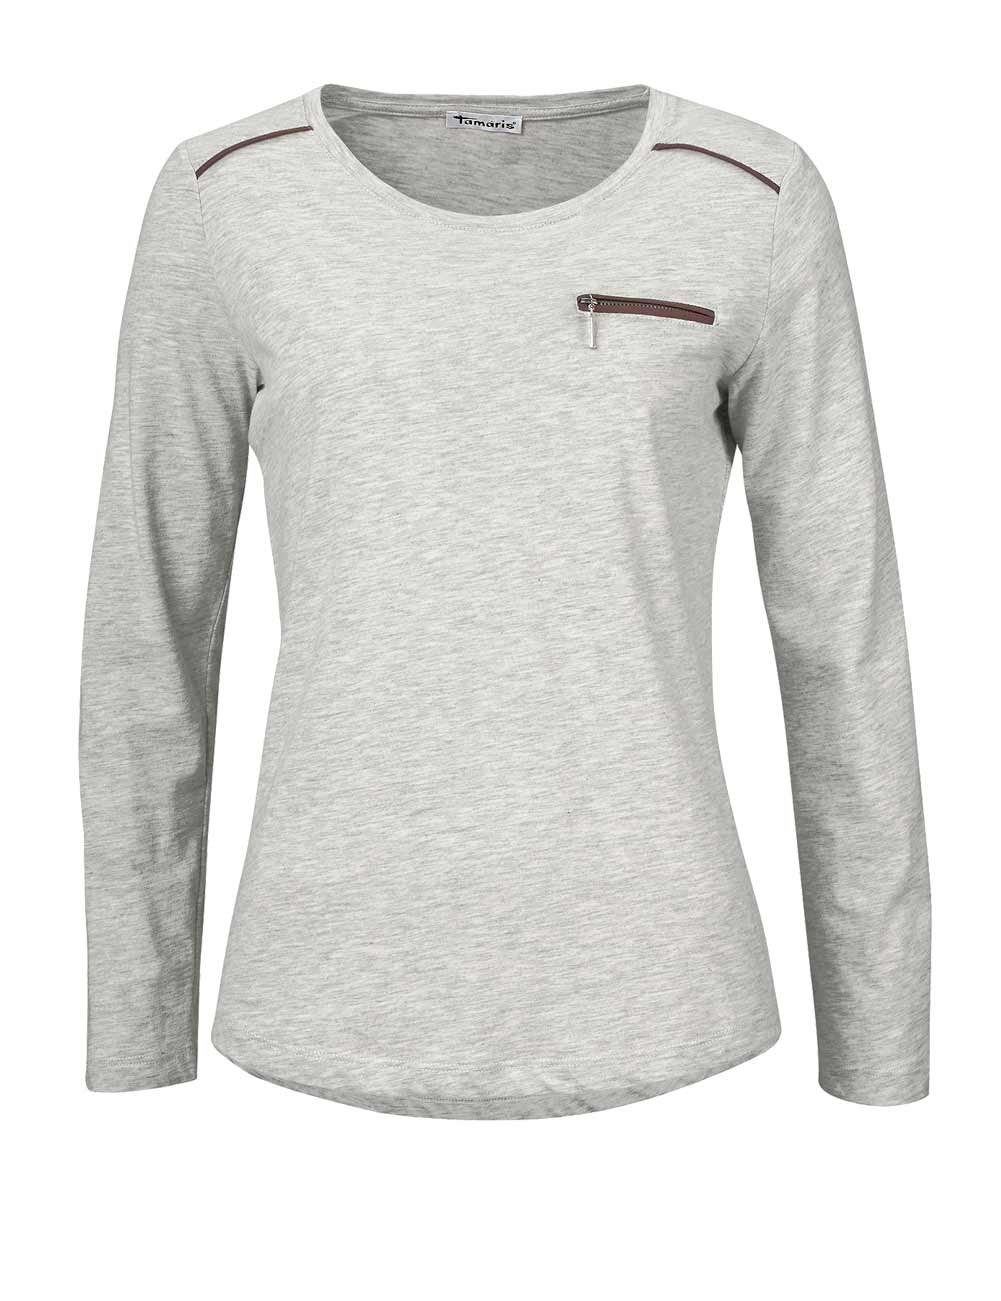 Tamaris T-Shirt Tamaris Damen Marken-Jerseyshirt, grau-melange